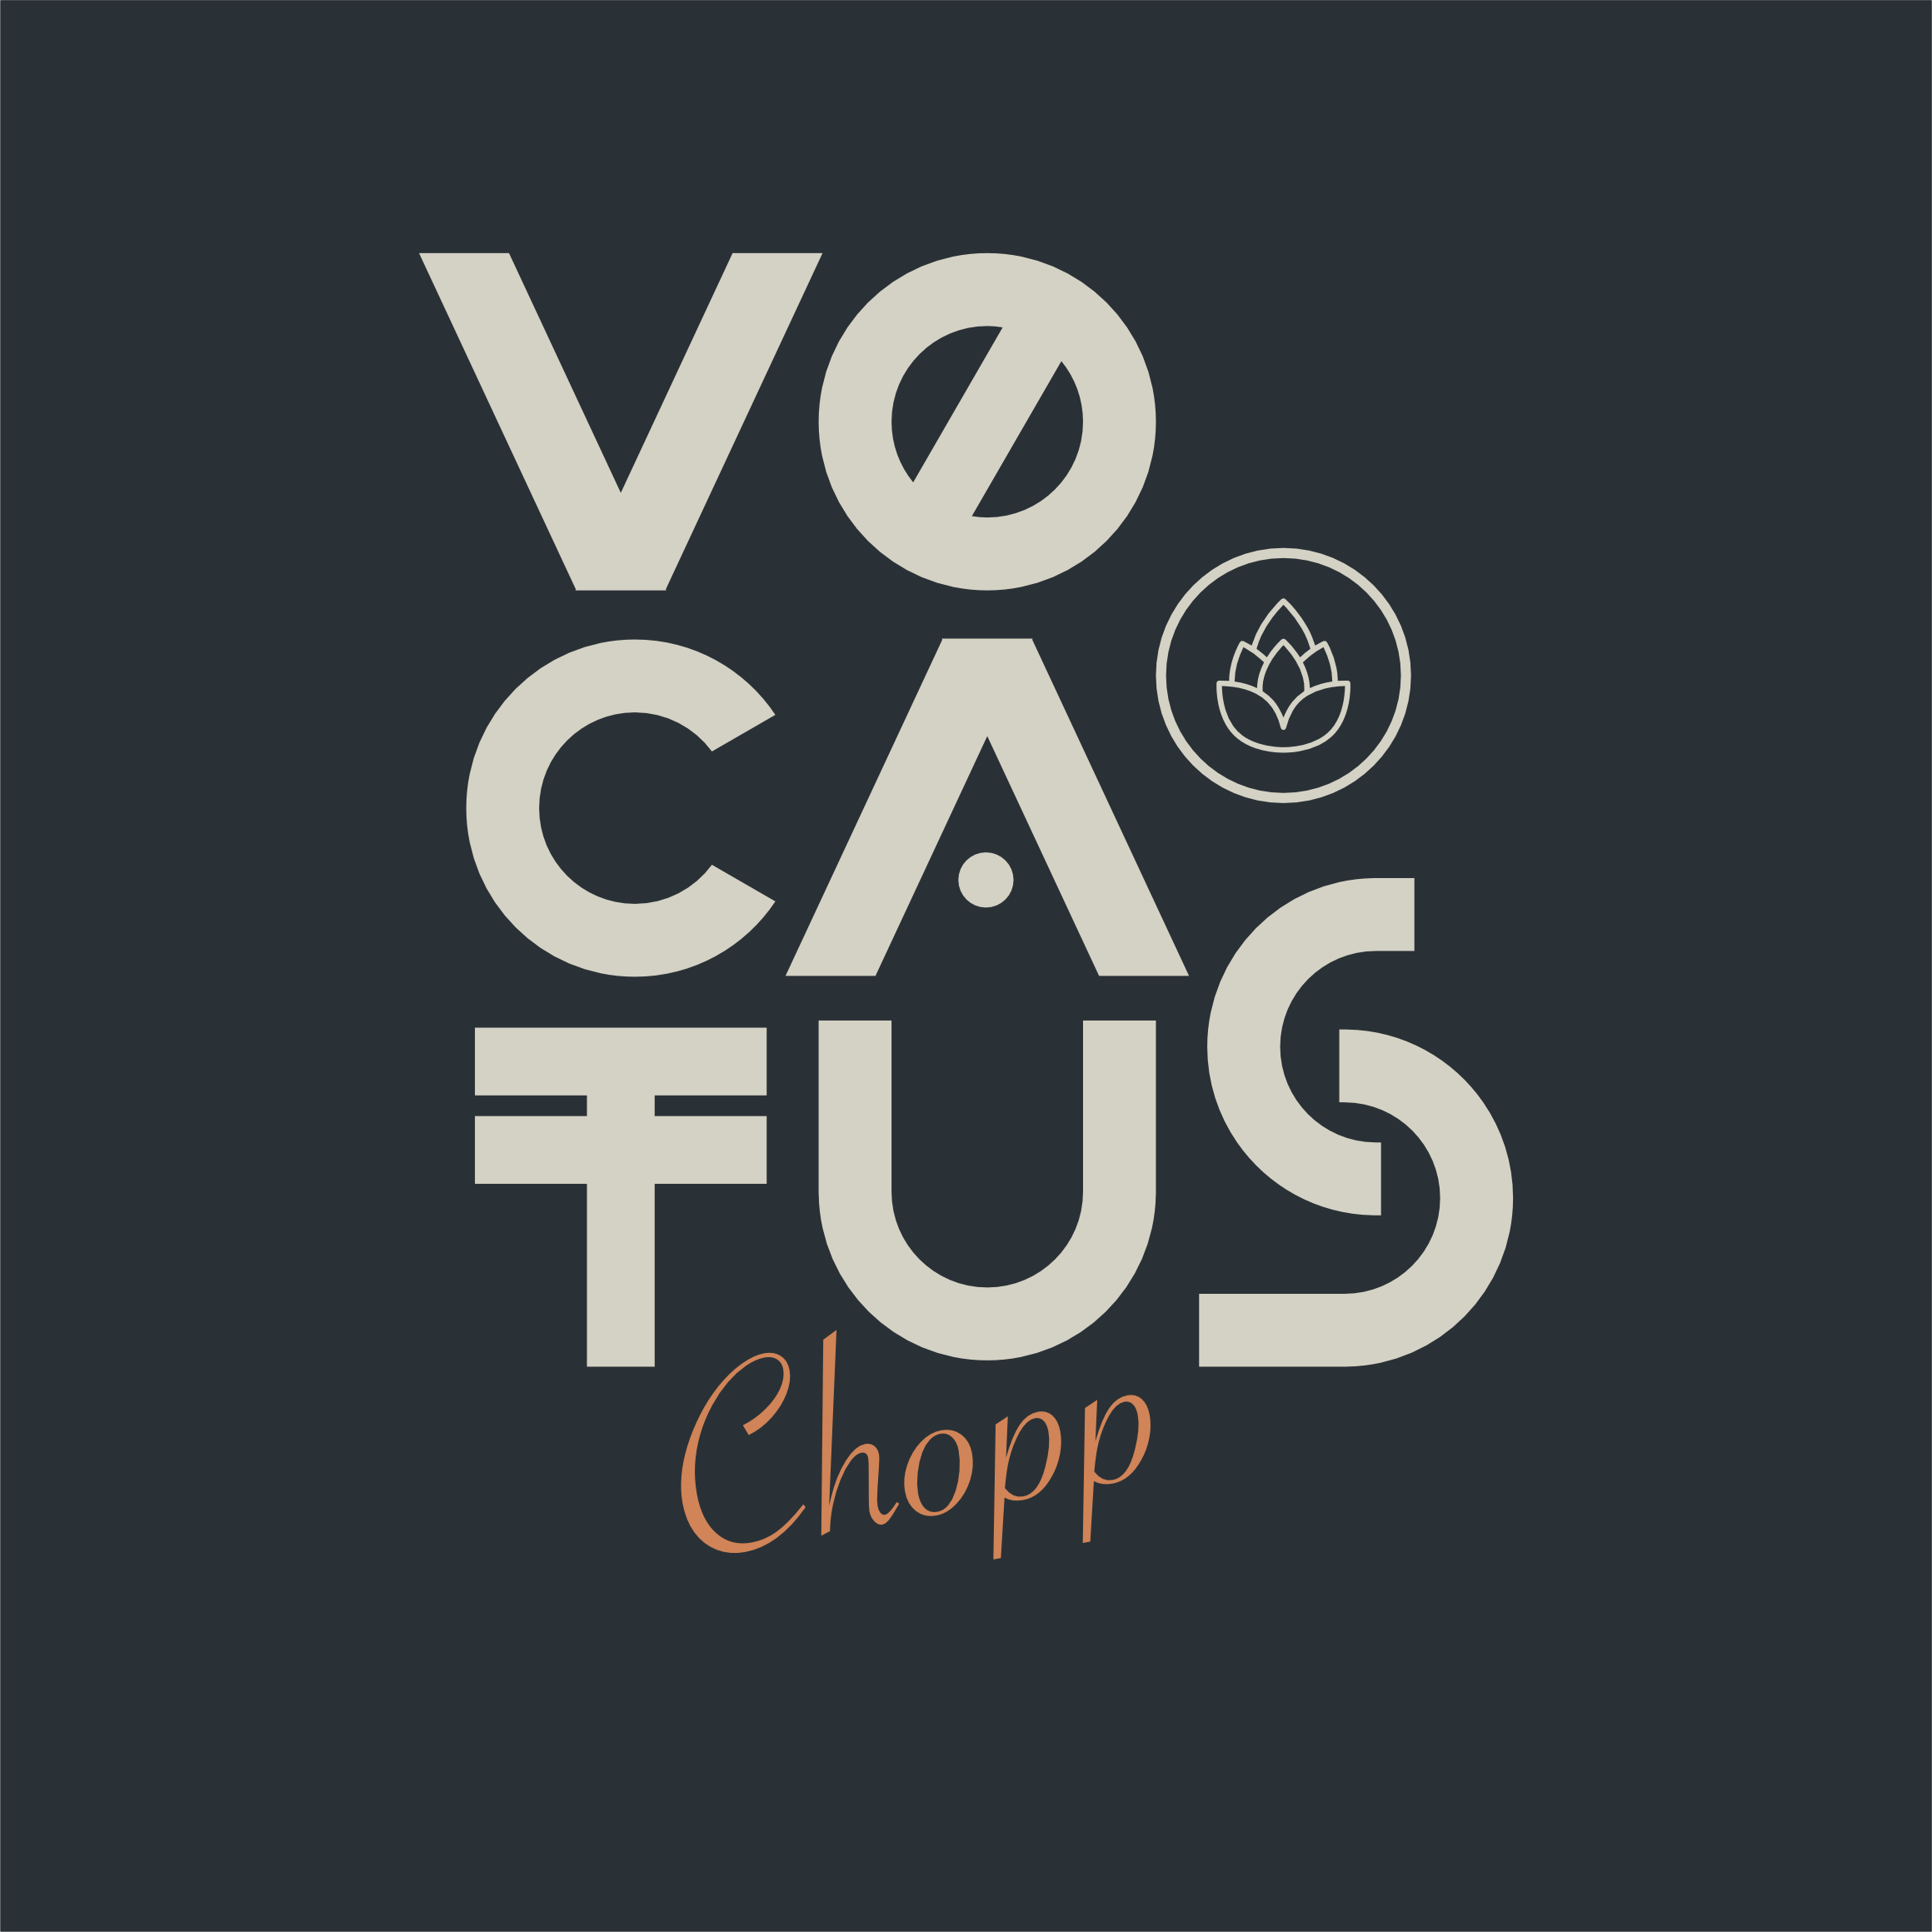 Chopp Vocatus